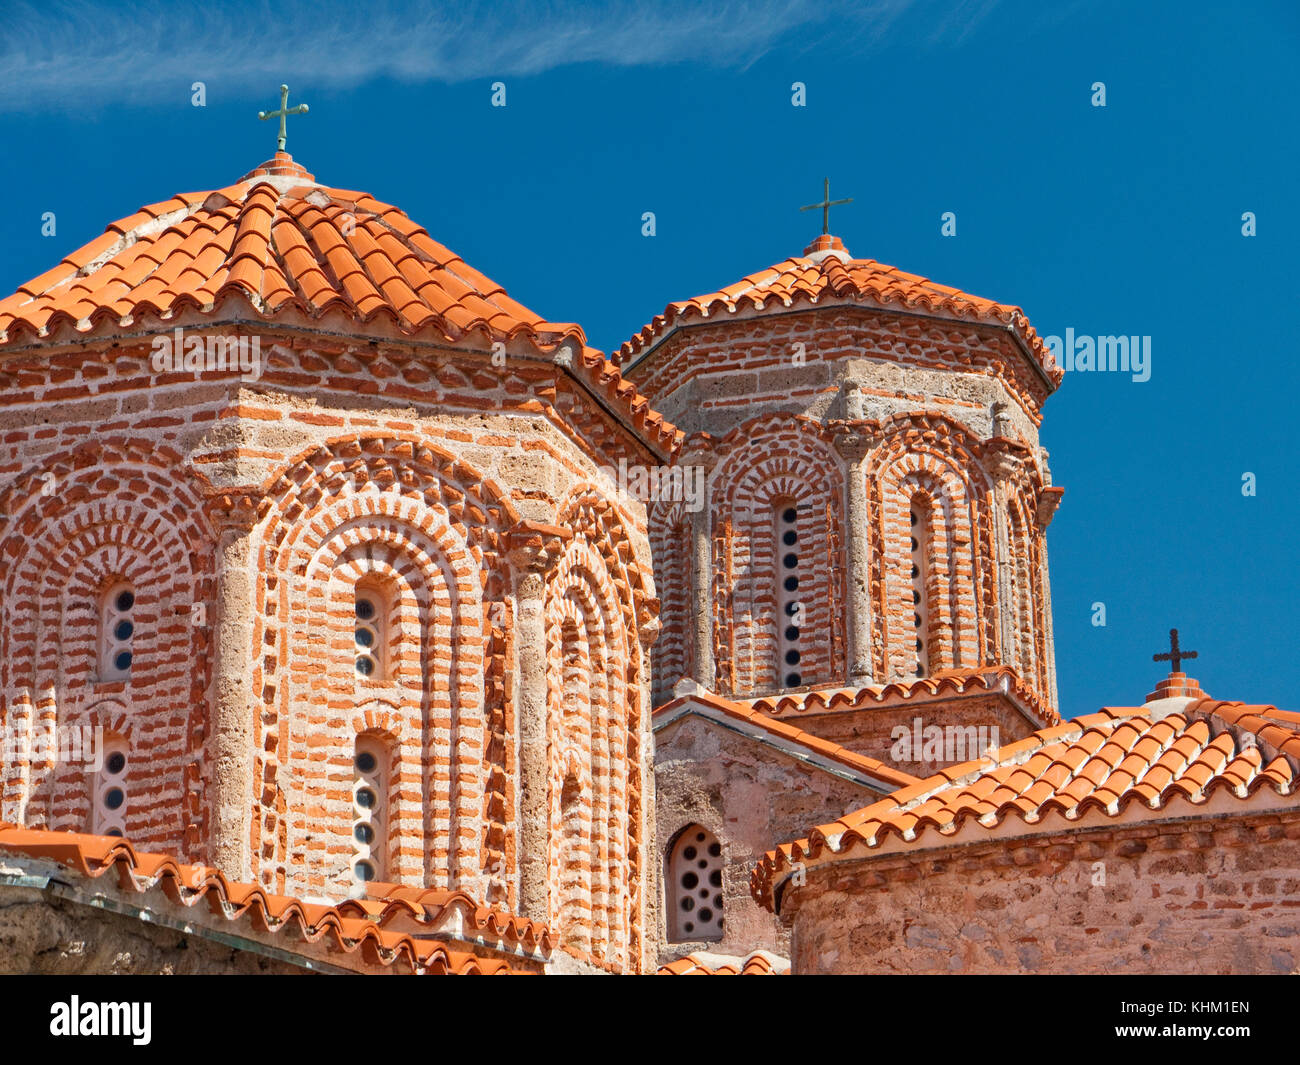 Macedonian Orthodox church of St. Naum in the St. Naum monastery complex, Lake Ohrid, Macedonia Stock Photo